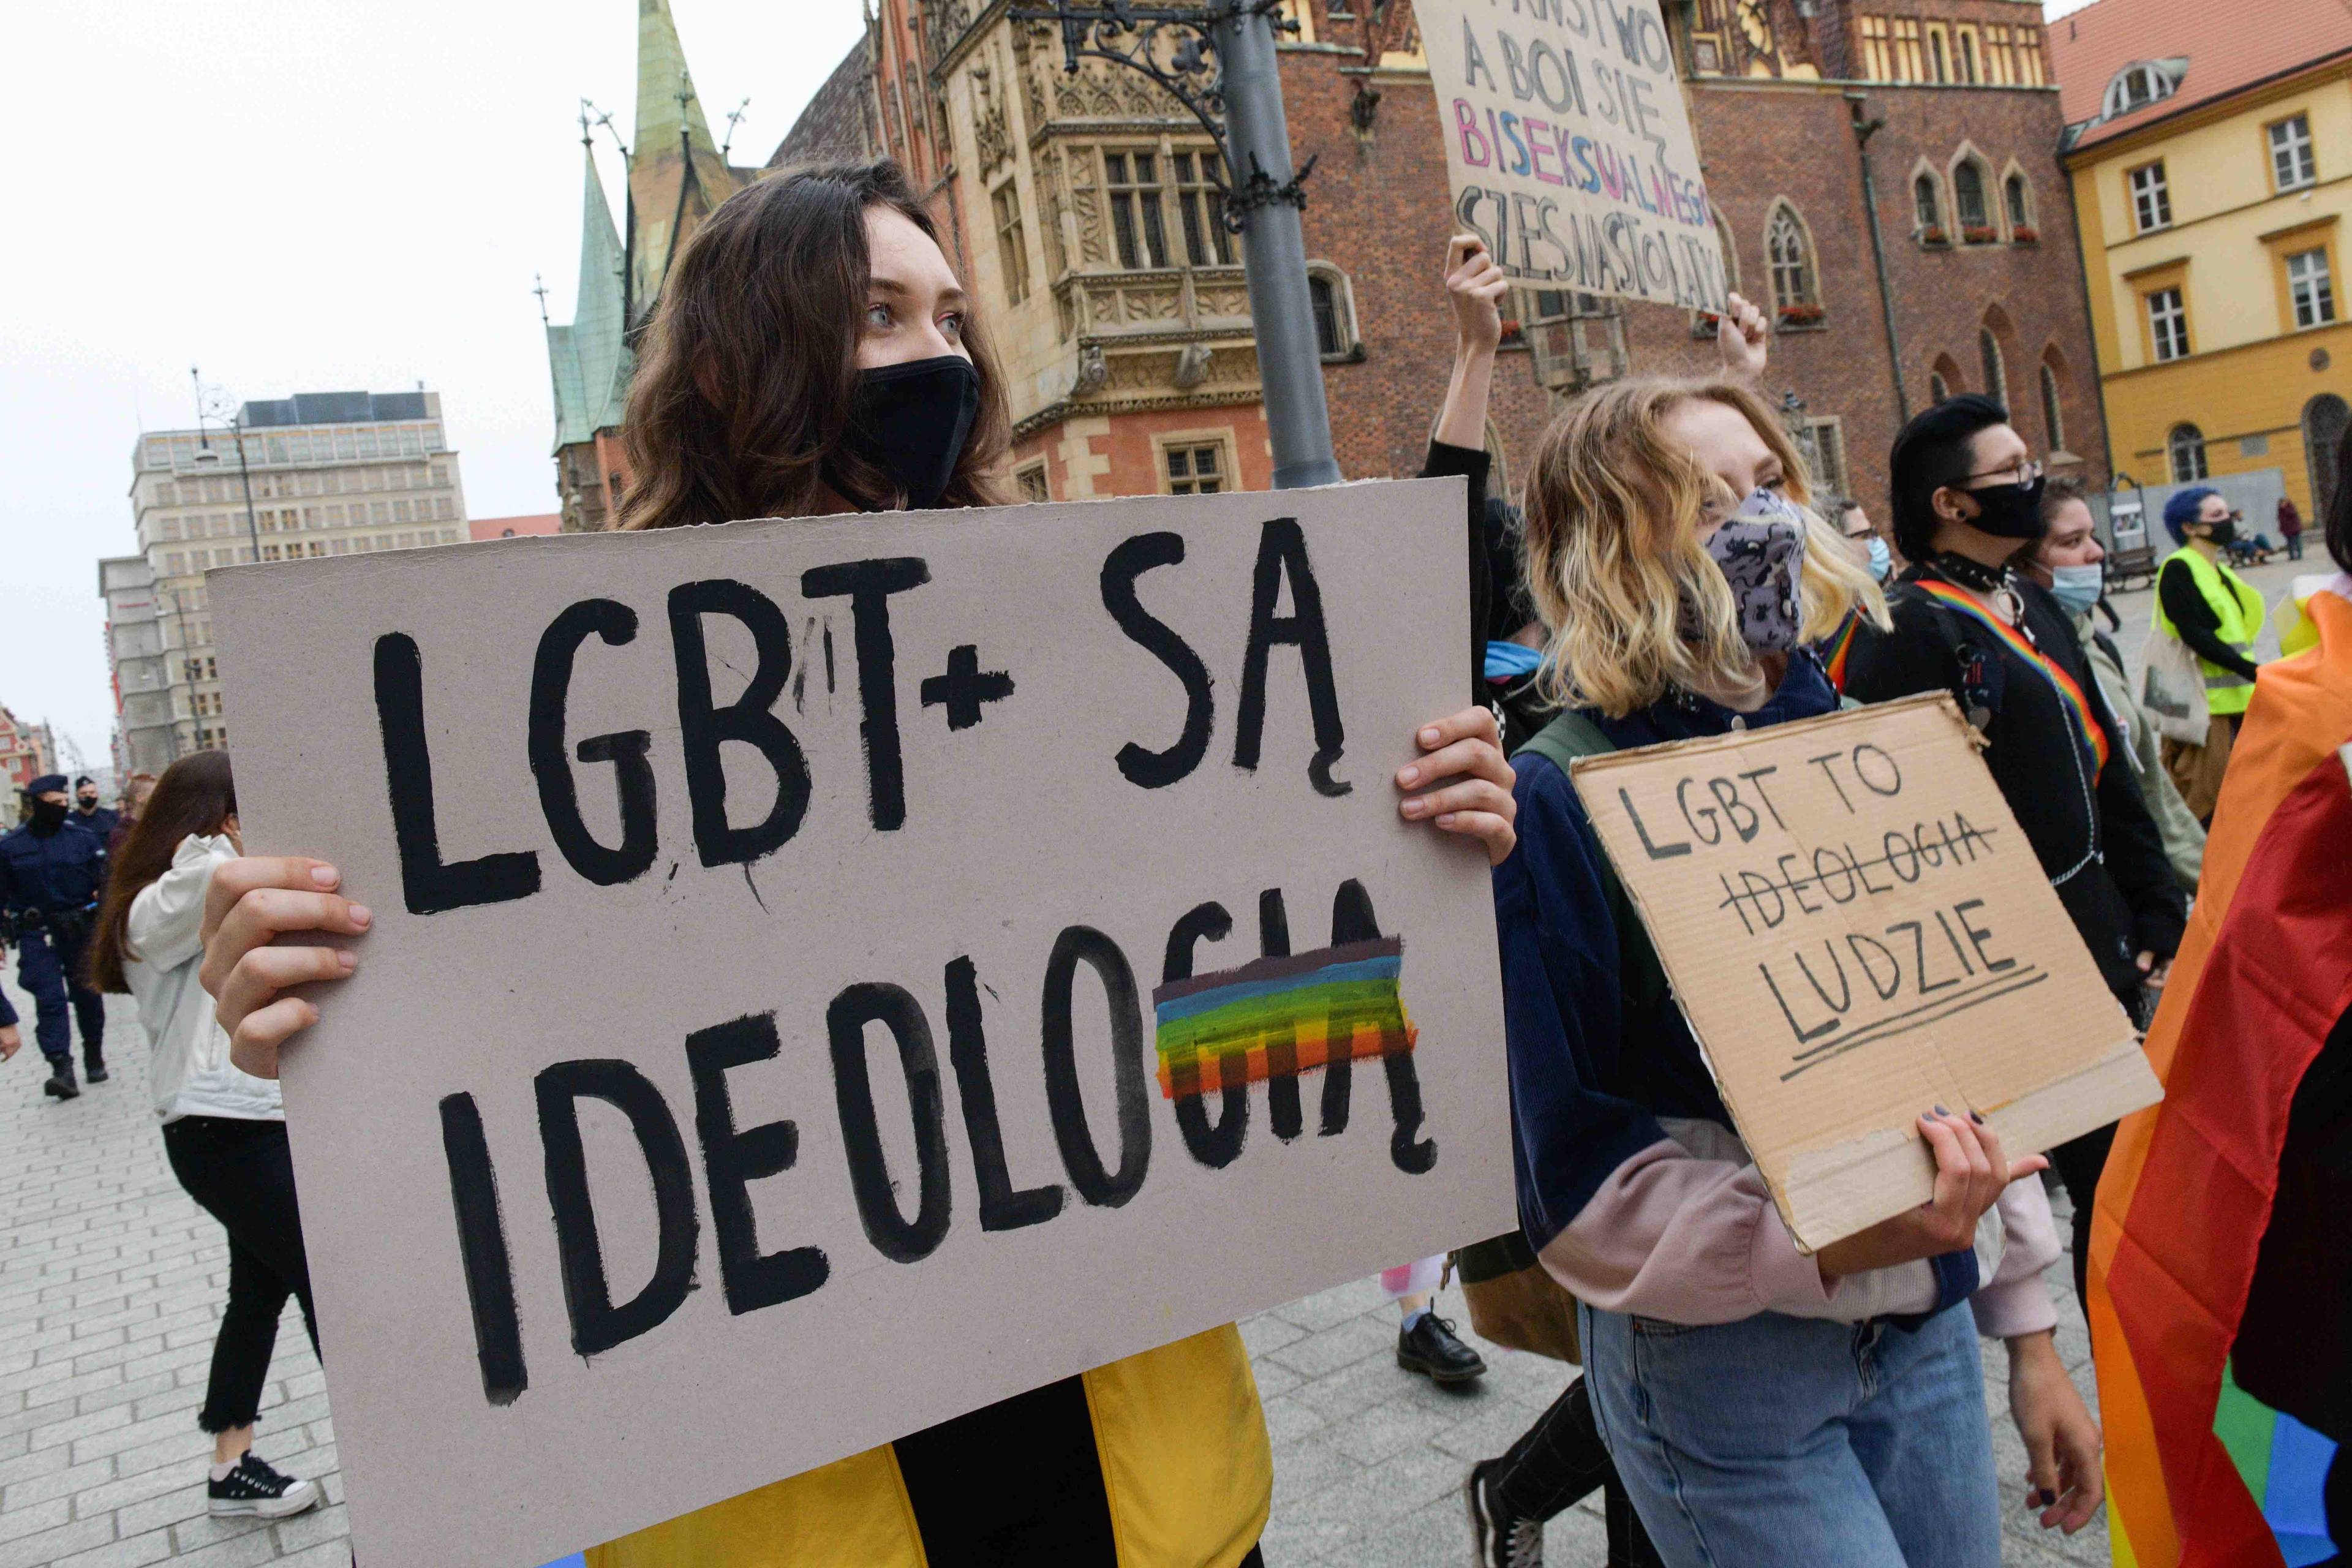 Demonstracja przeciwko atakom na społeczność LGBT, na pierwszym planie dziewczyna trzyma plakat z napisem LGBT+ to ideologia gdzie ostatnie litery słowa ideologia są skreślone, Obok inna osoba niesie plakat z napisem LGBT to ludzie. Wolność słowa